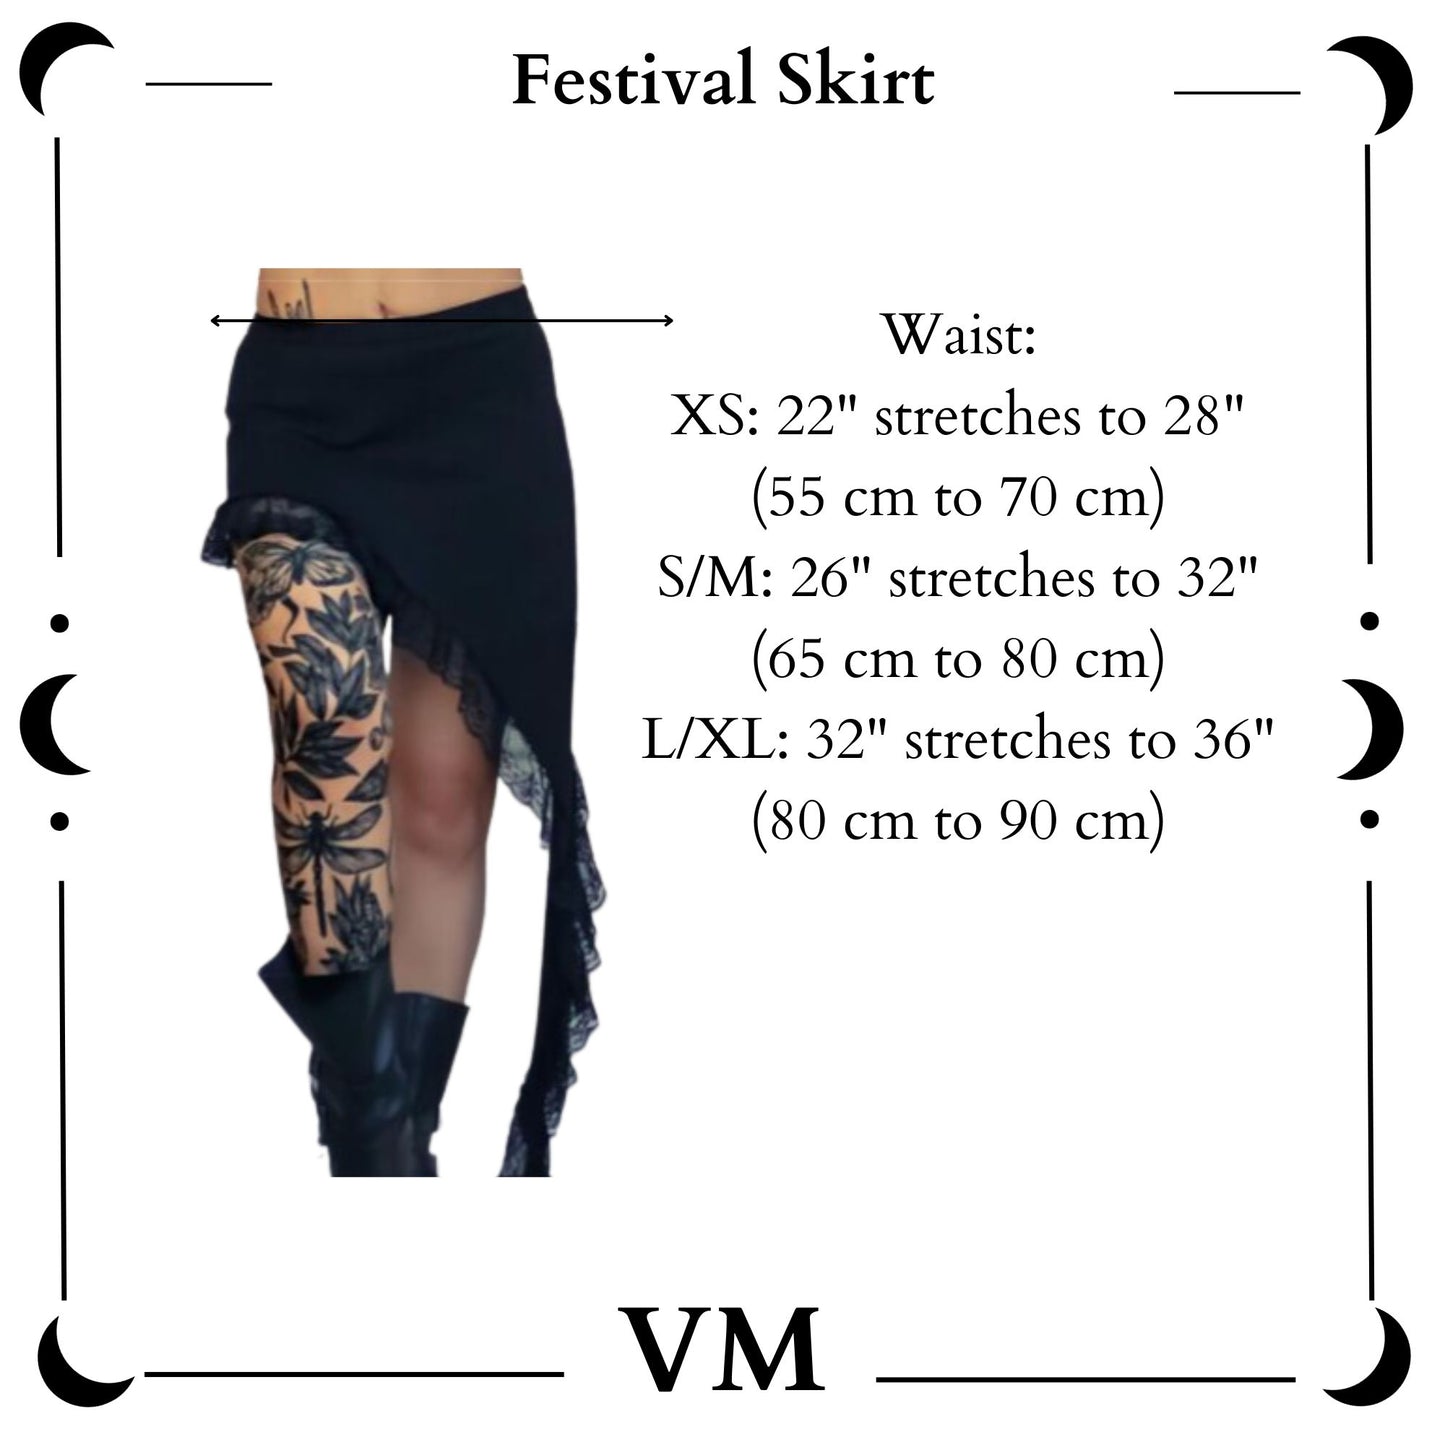 The VM Festival Skirt